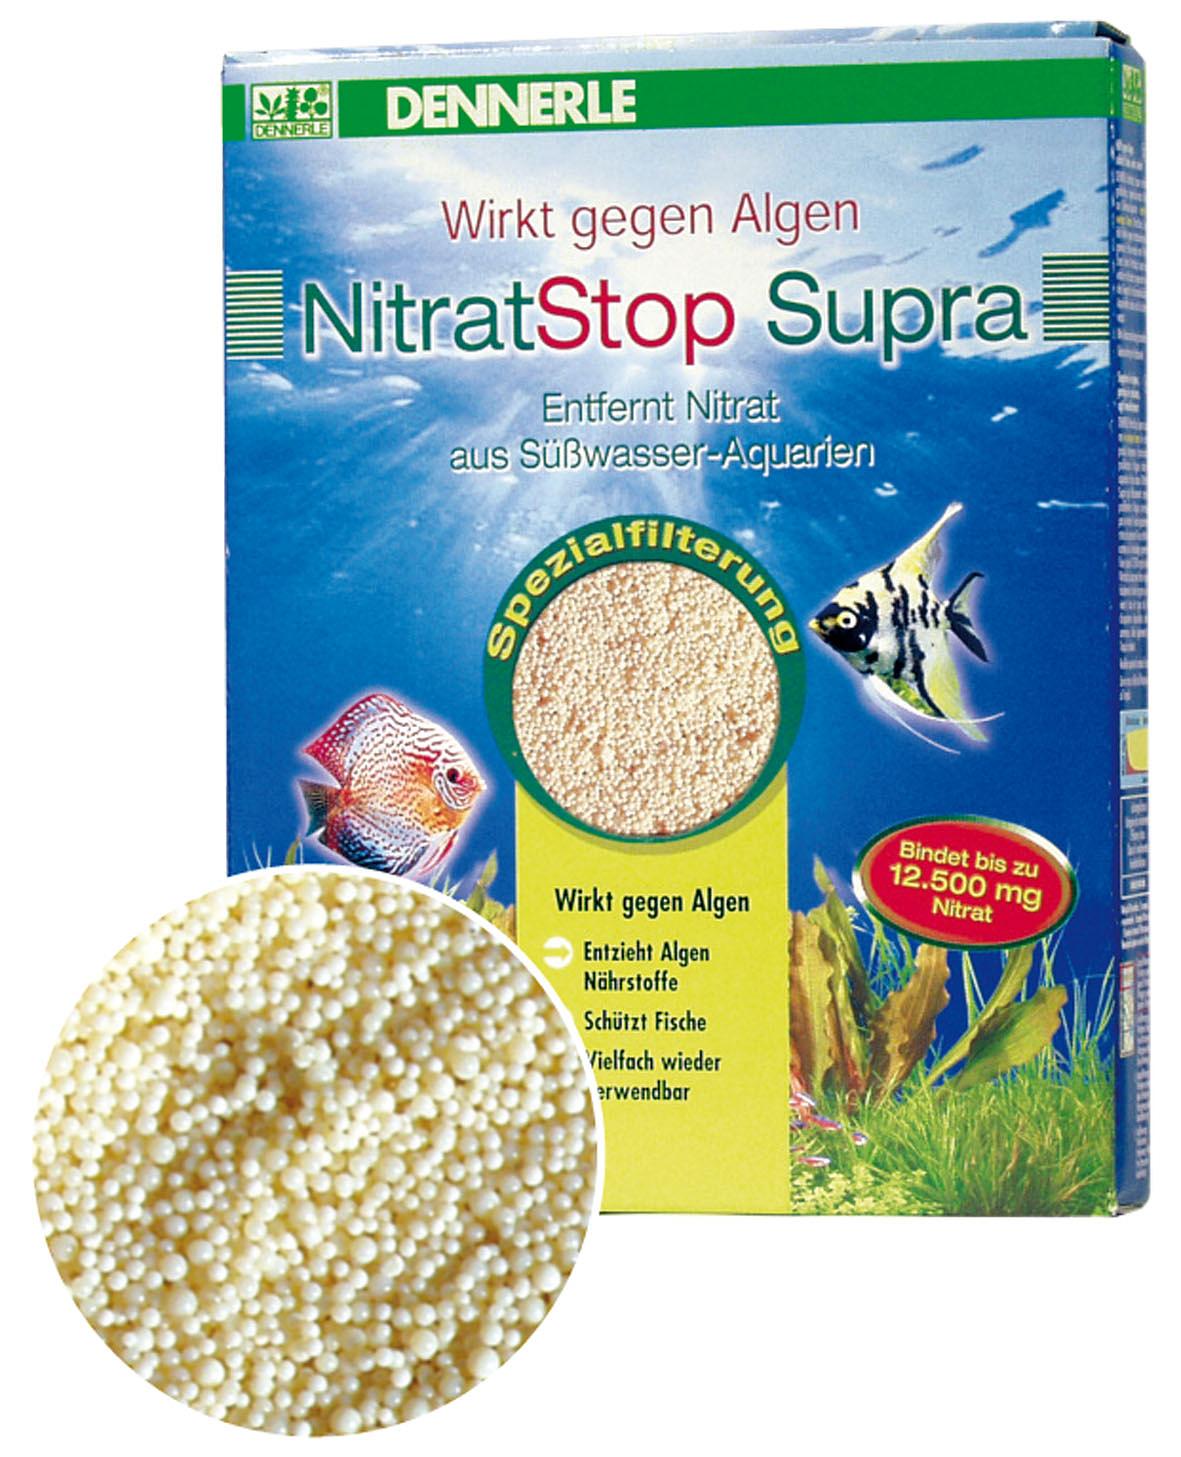 Dennerle Nitrat Stop Supra 250ml - Spezialfilterung, wirkt gegen Algen